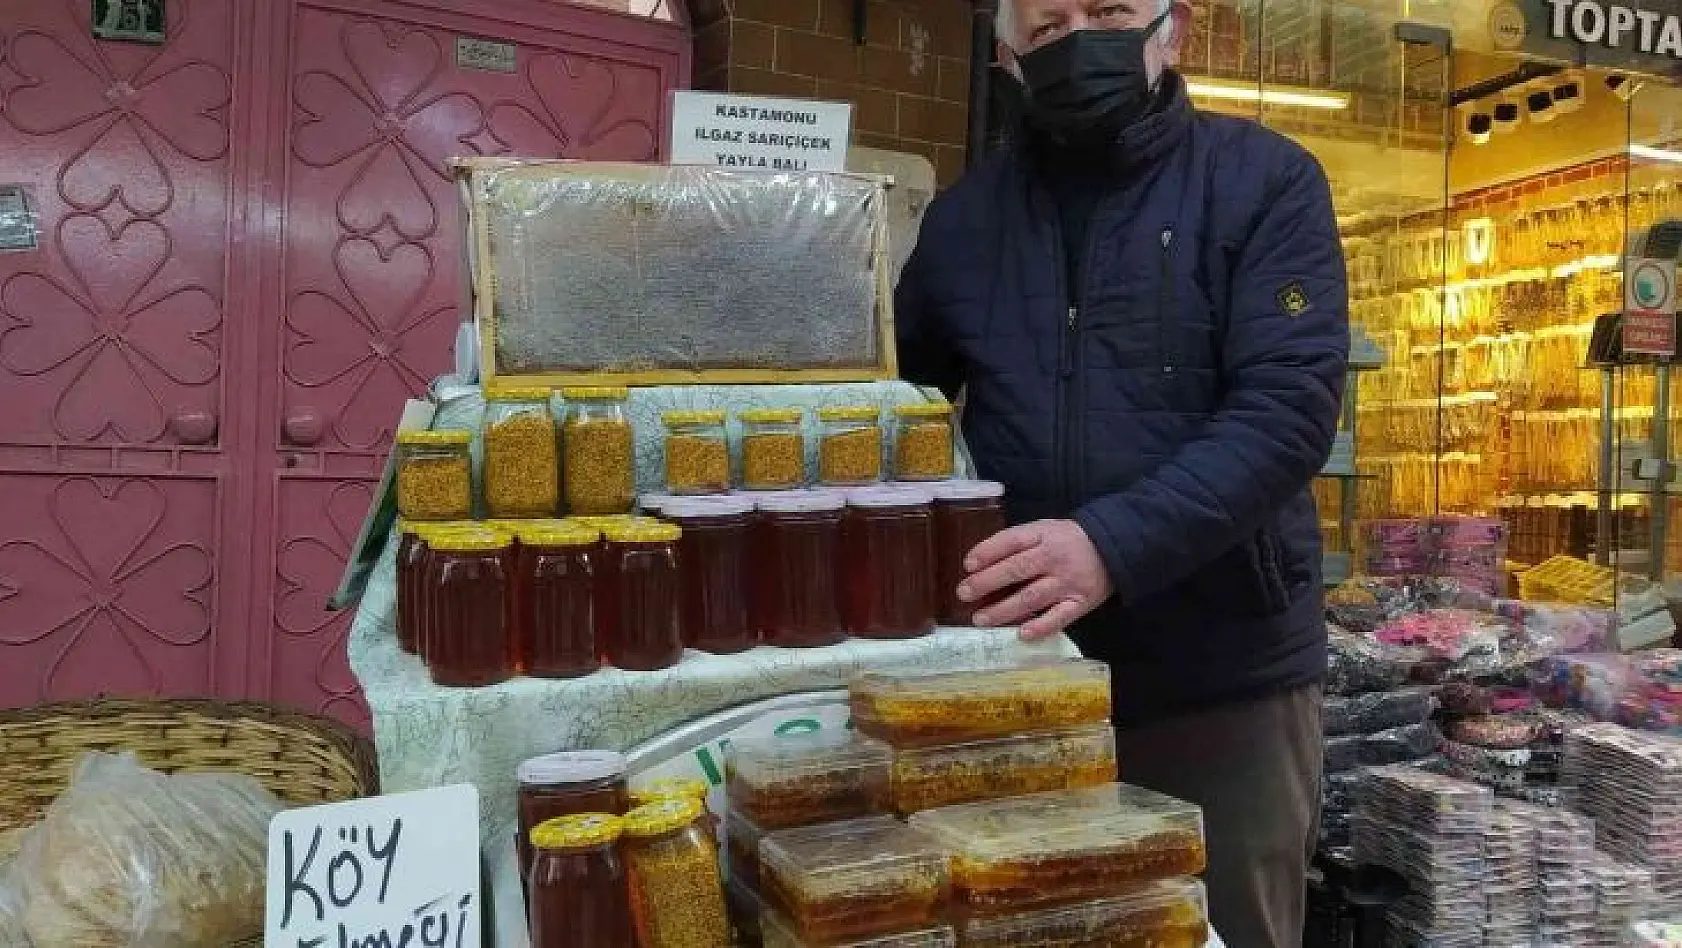 Ilgaz'ların balını Uludağ'ın eteklerinde satıyor